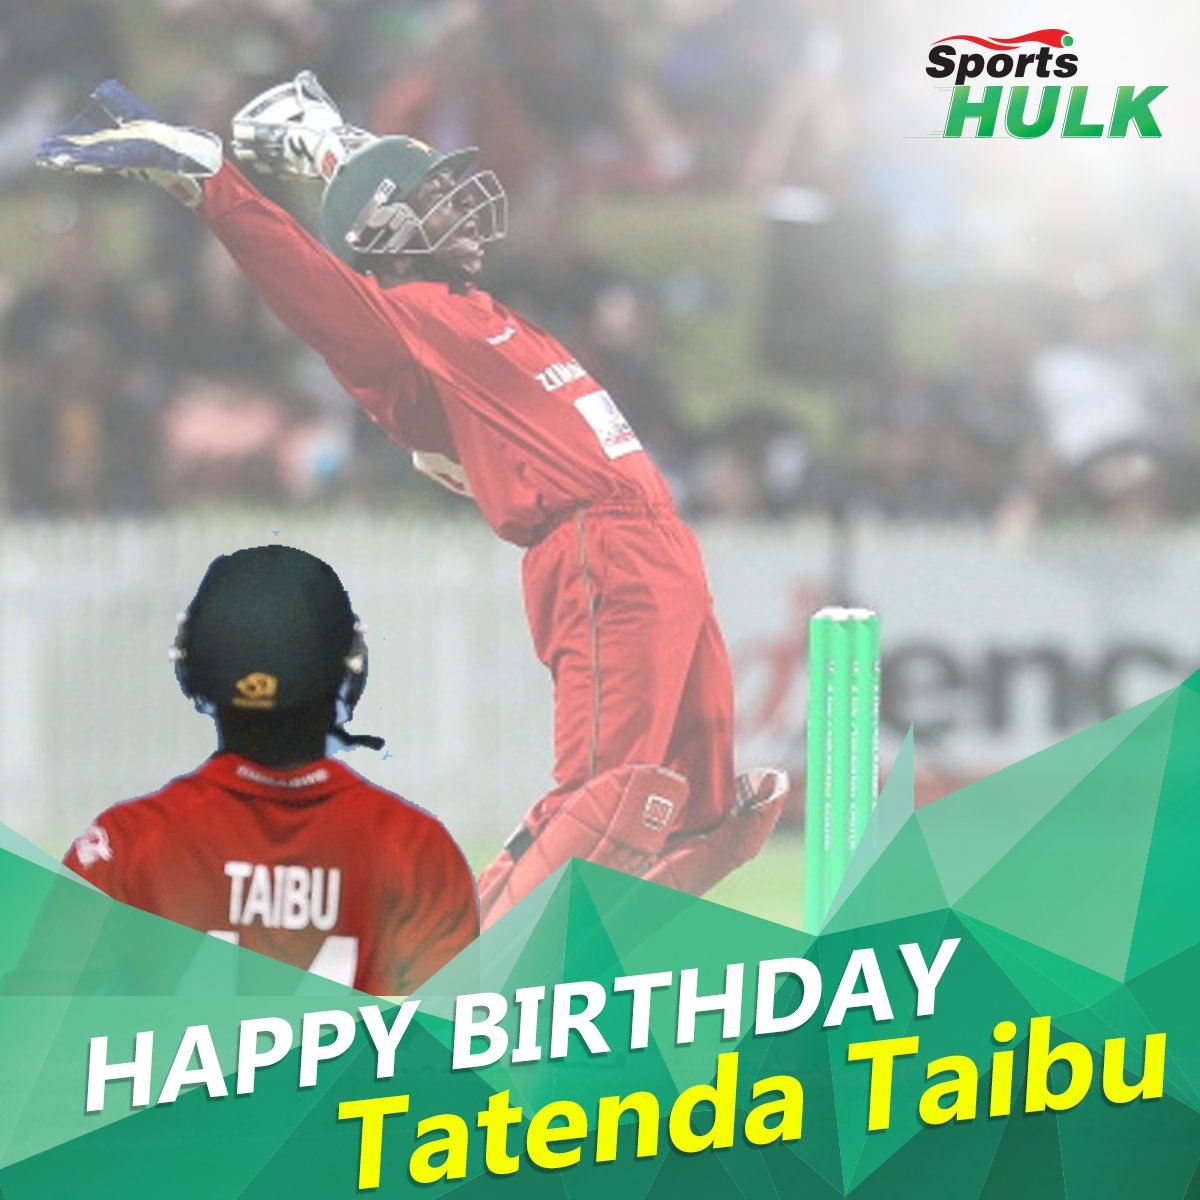 Happy birthday to Zimbabwe\s Tatenda Taibu!  